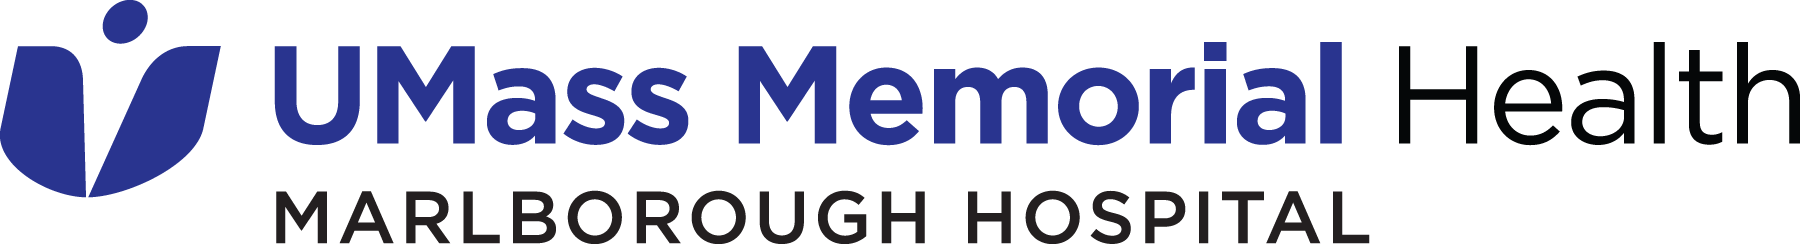 UMass Memorial Marlborough Hospital Logo